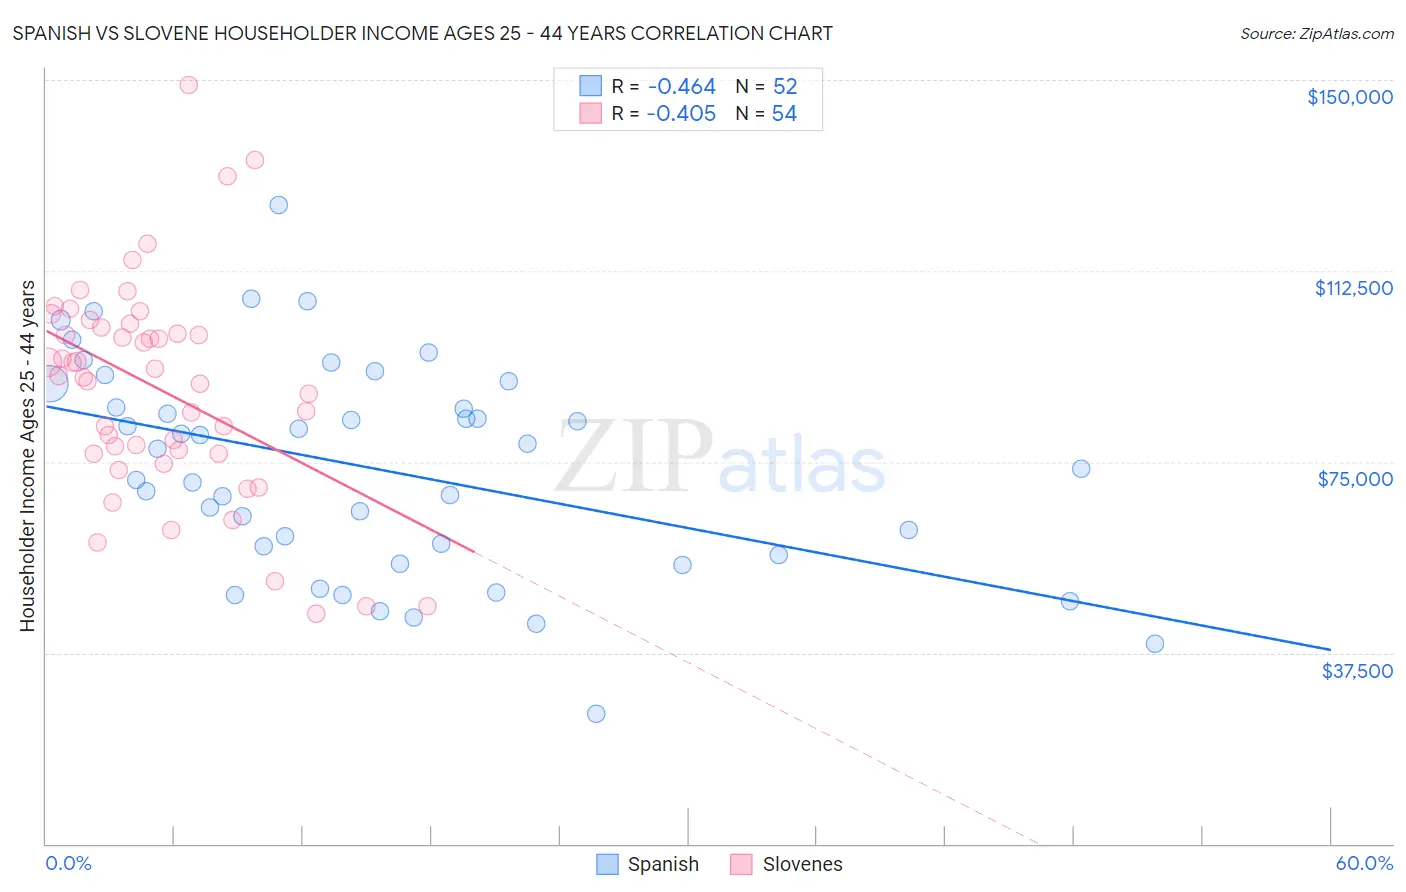 Spanish vs Slovene Householder Income Ages 25 - 44 years